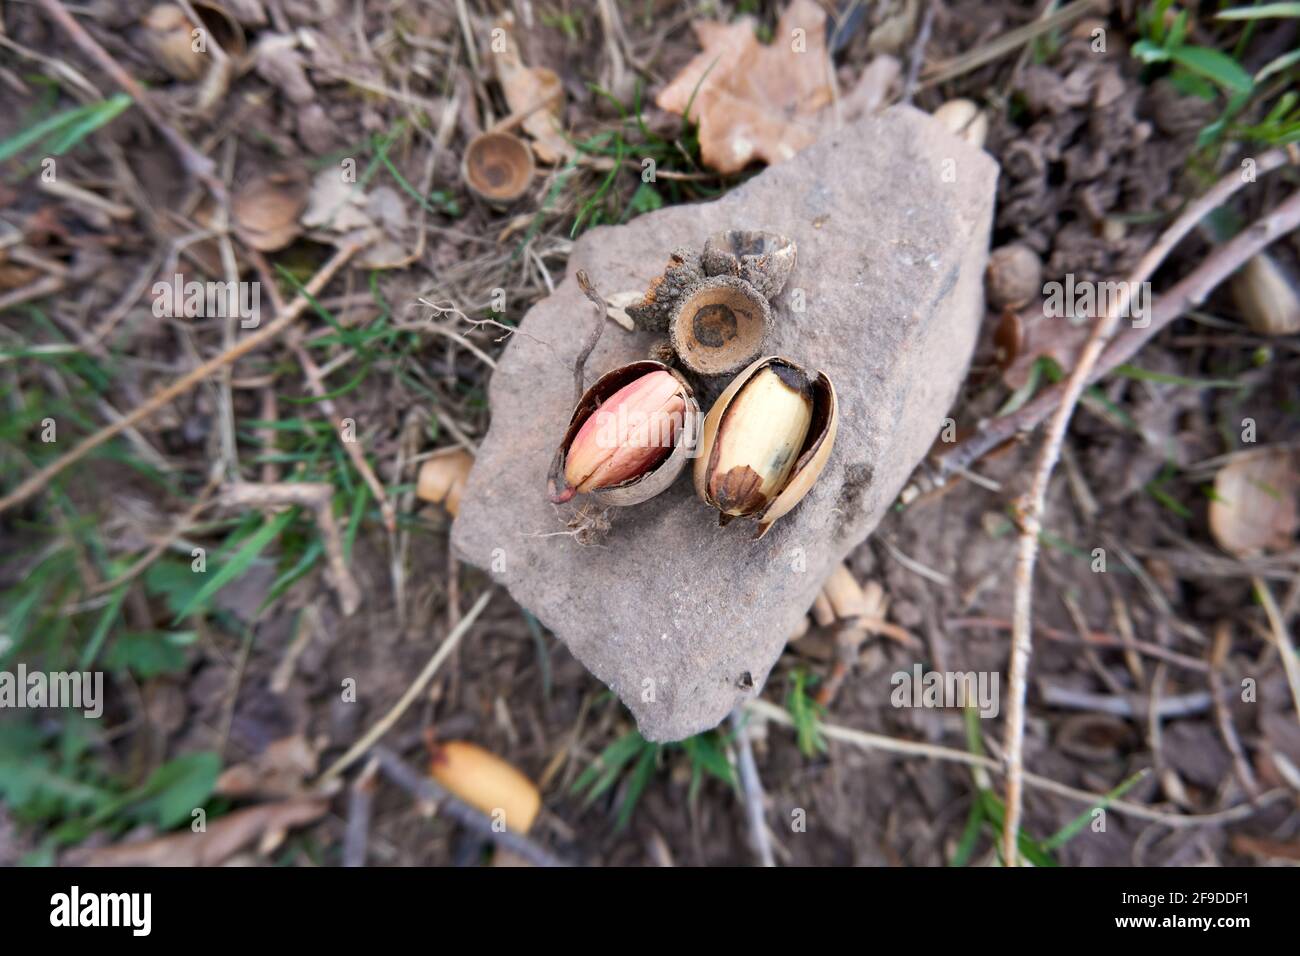 Une vue de dessus d'une paire d'acorns cassés sur la pierre dans une forêt avec de l'herbe, des feuilles mortes, et des brindilles en arrière-plan Banque D'Images